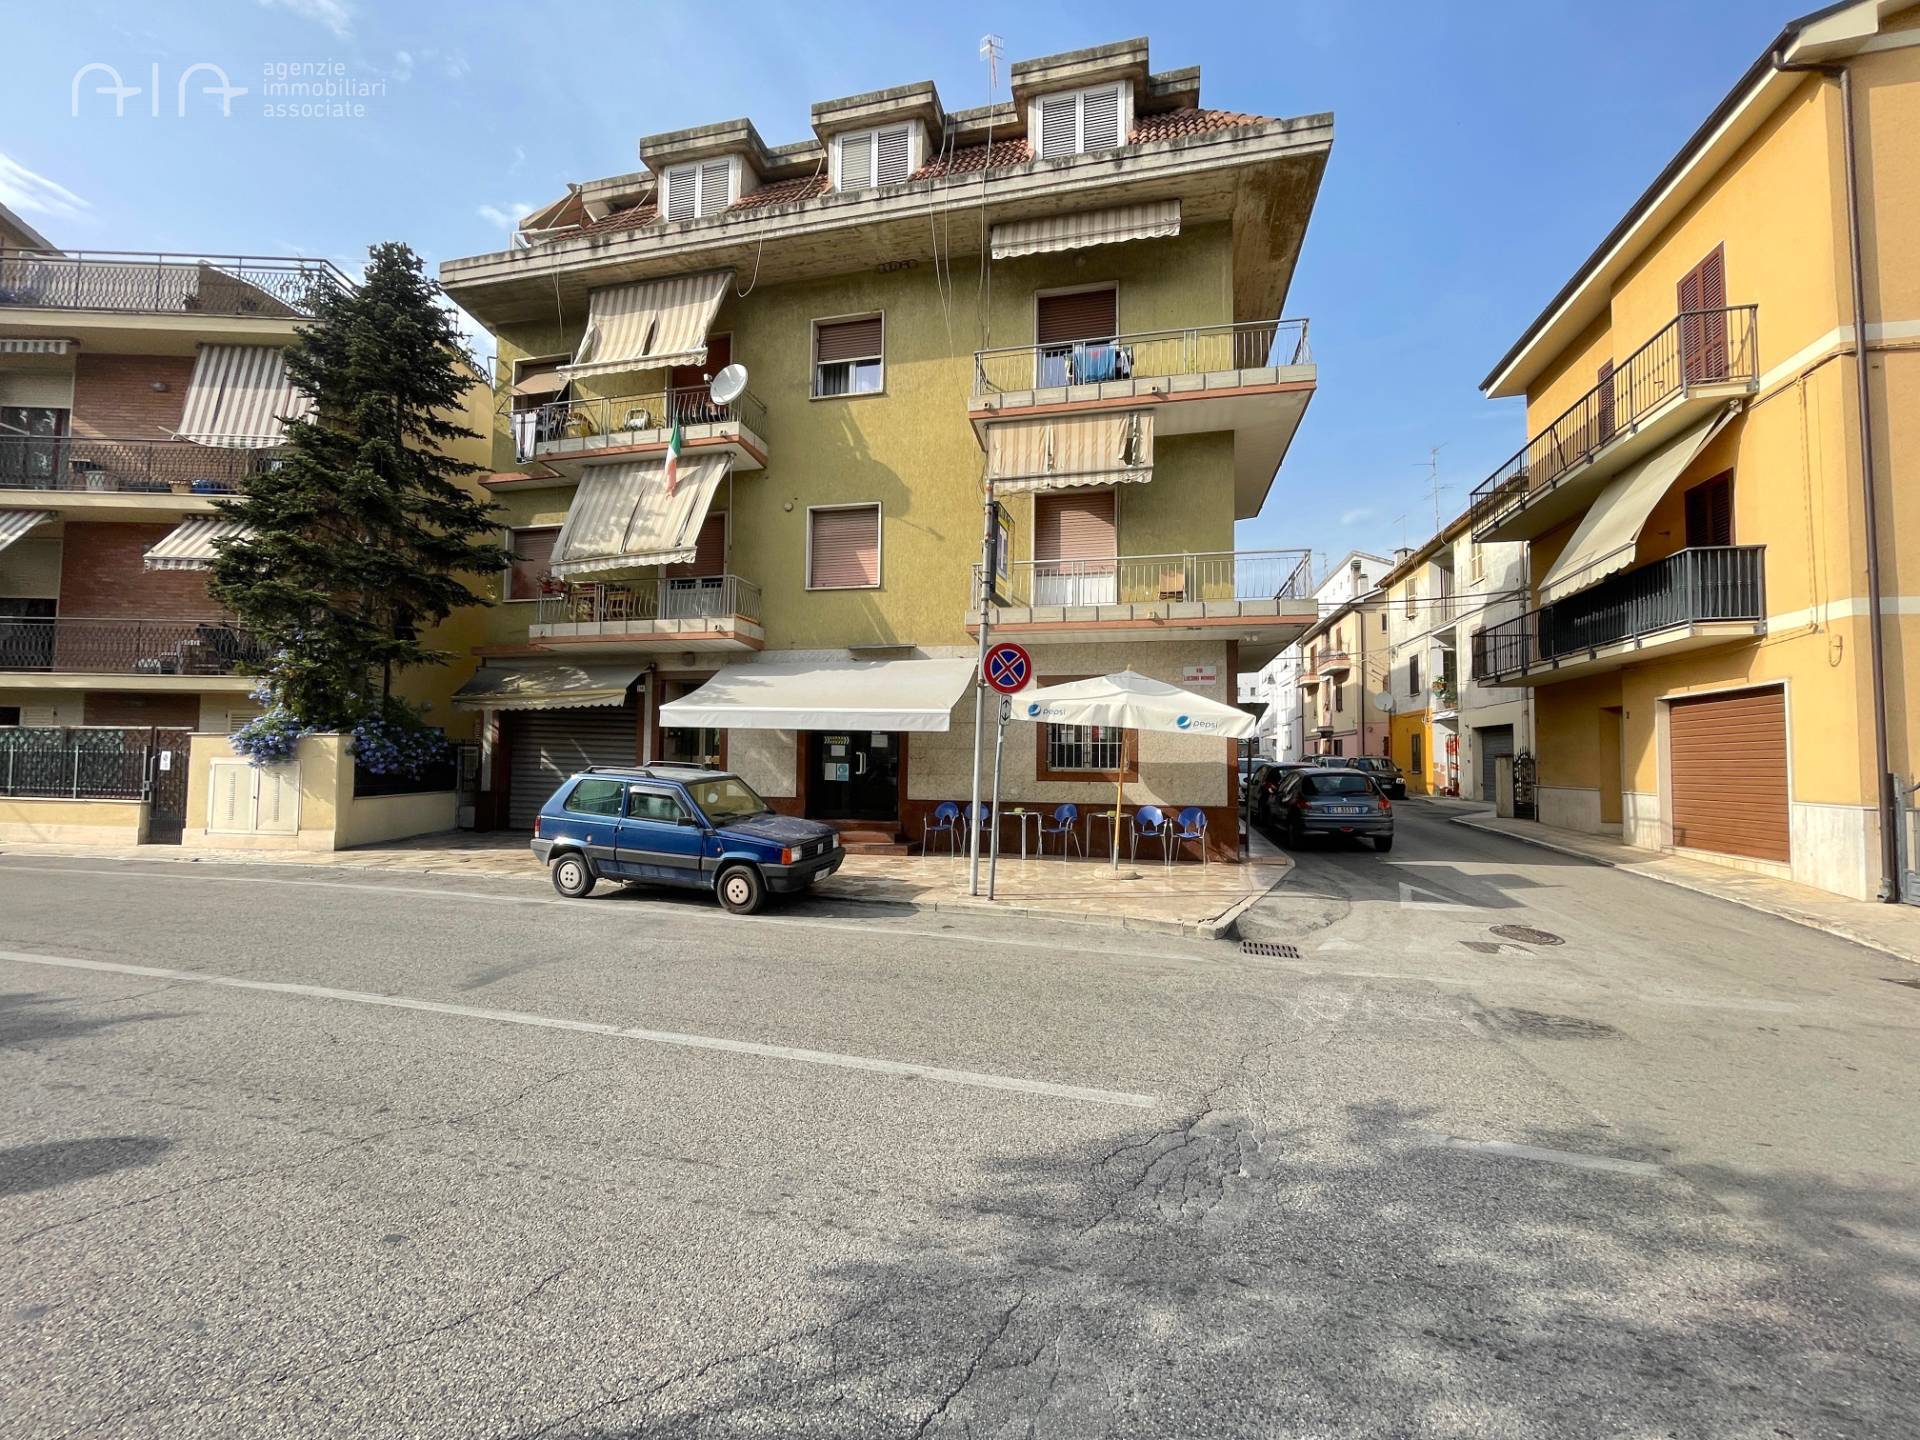 Locale commerciale in vendita, San Benedetto del Tronto residenziale nord (al di sopra della ss16)